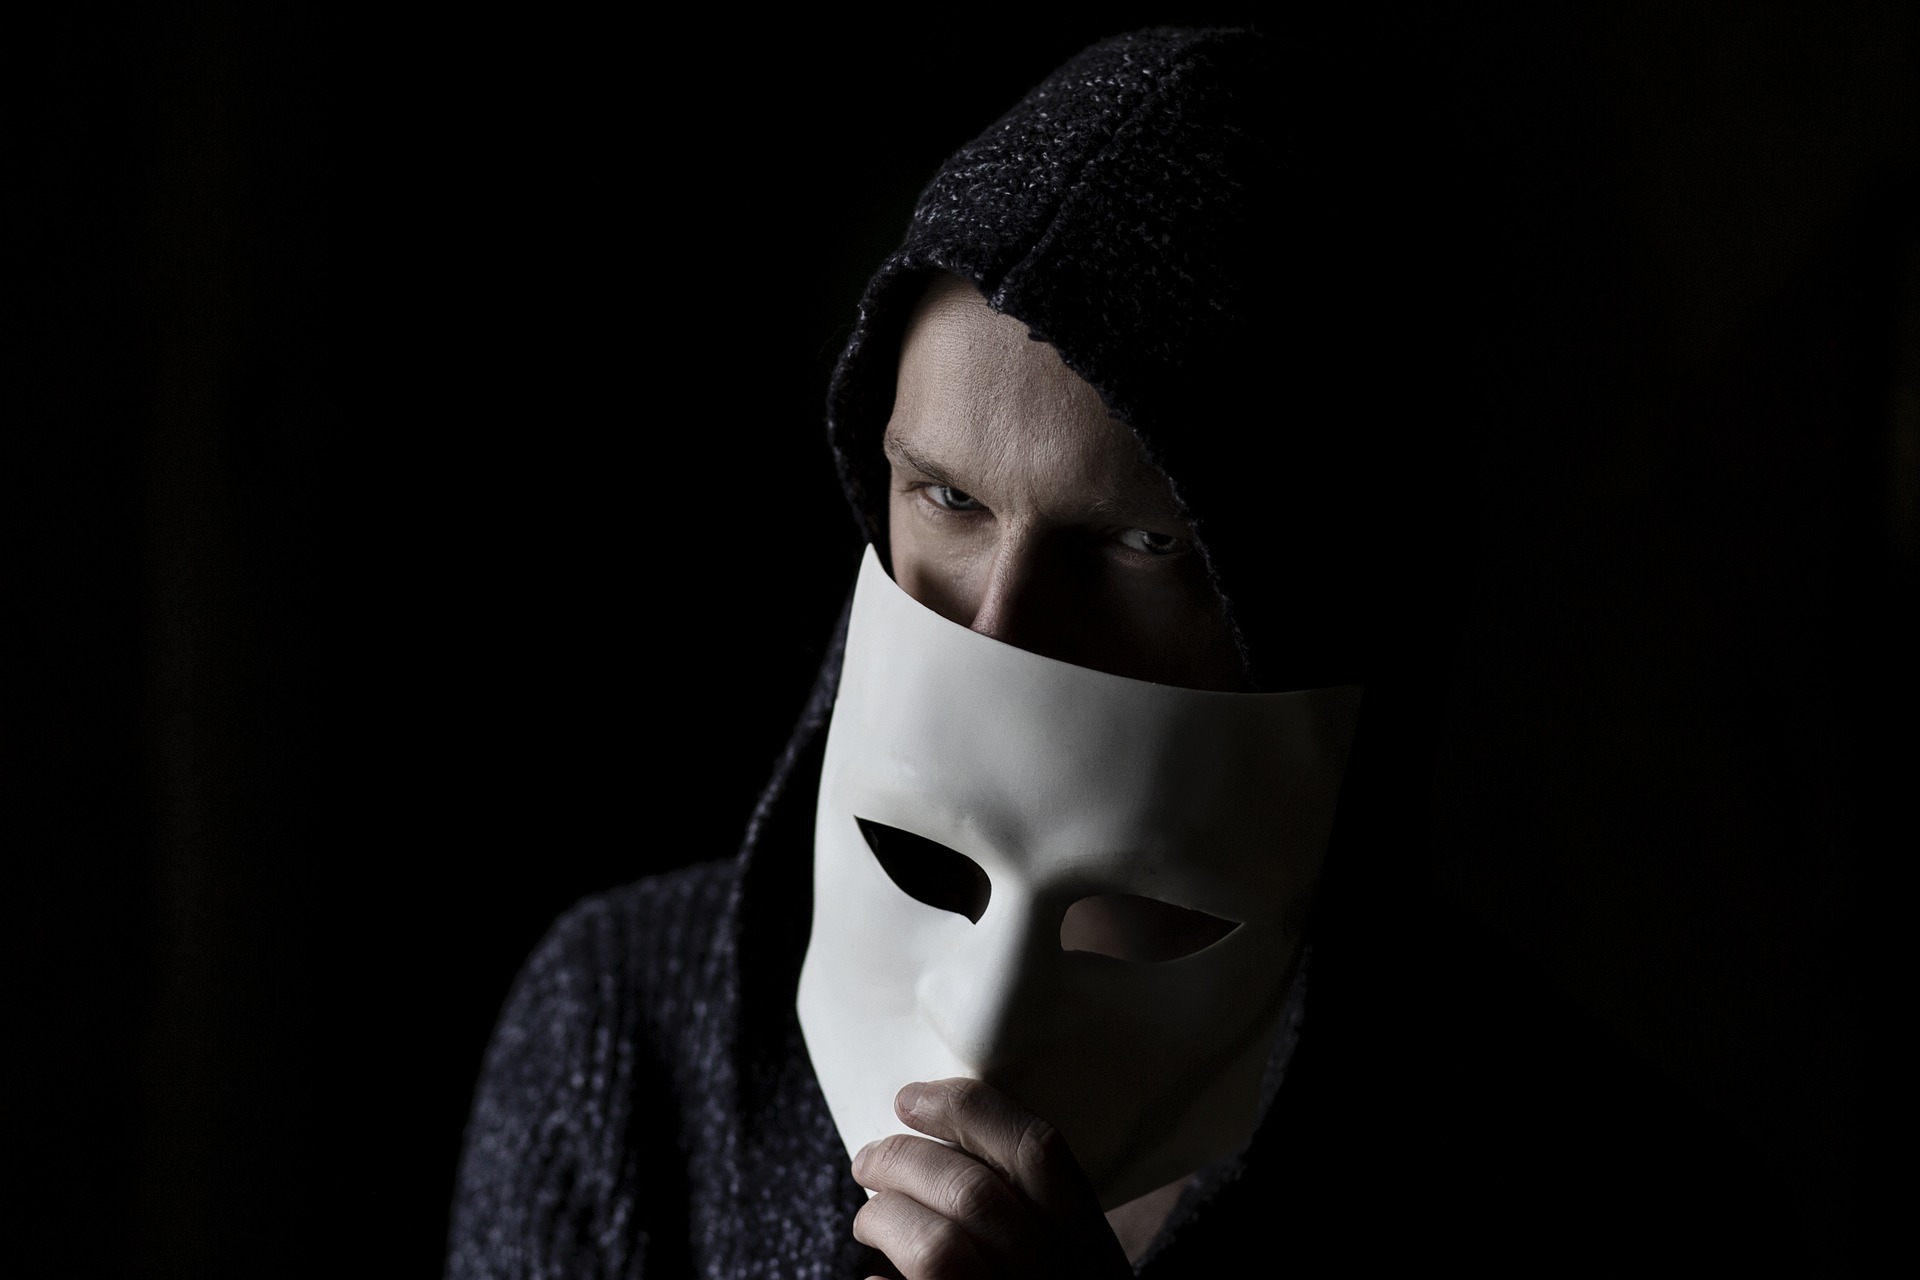 Mann, der sich hinter einer Maske versteckt